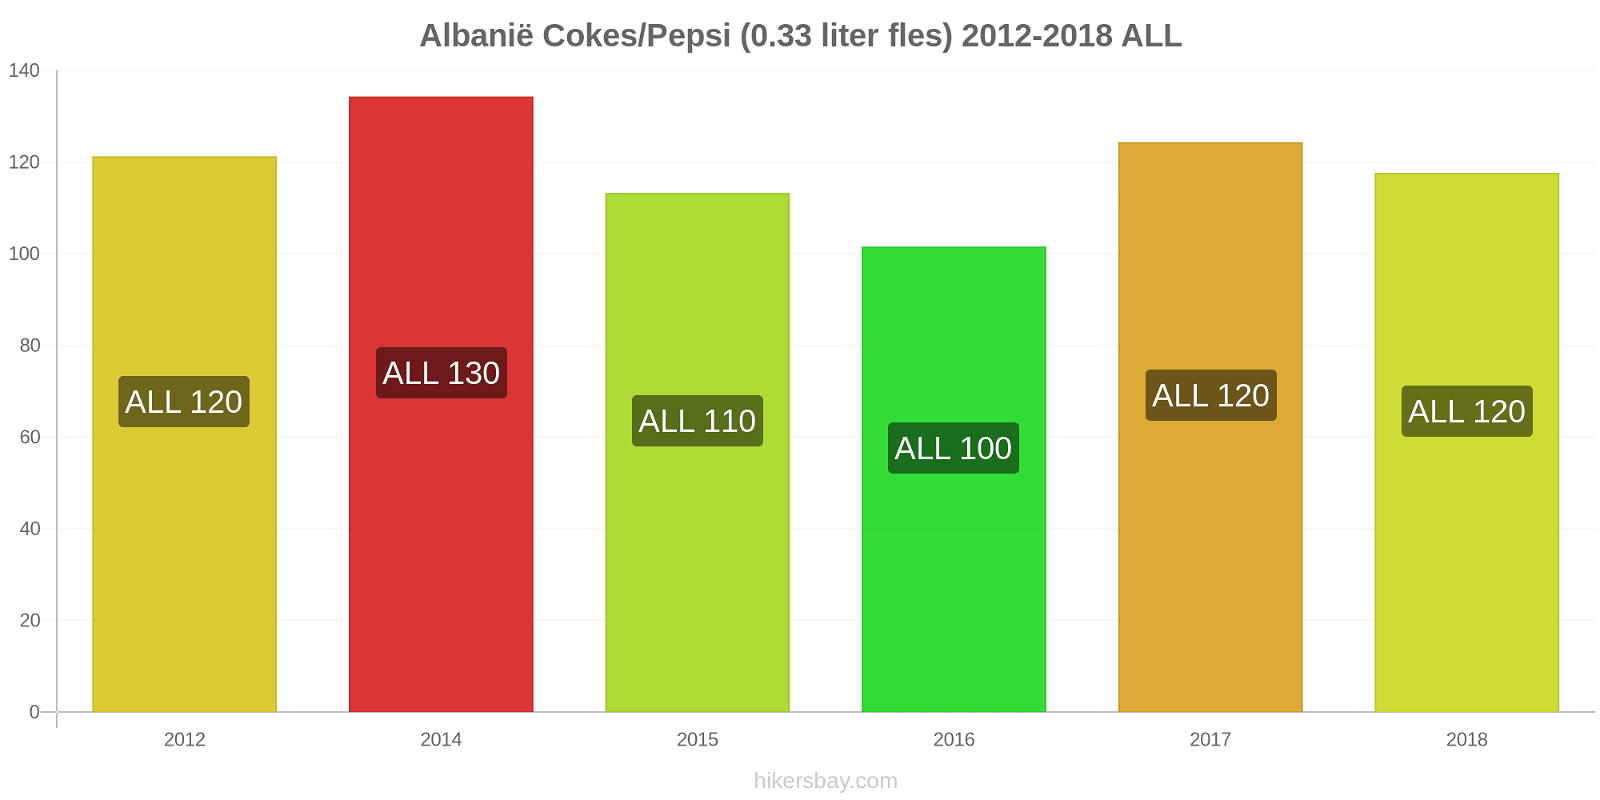 Albanië prijswijzigingen Cokes/Pepsi (0,33 literfles) hikersbay.com